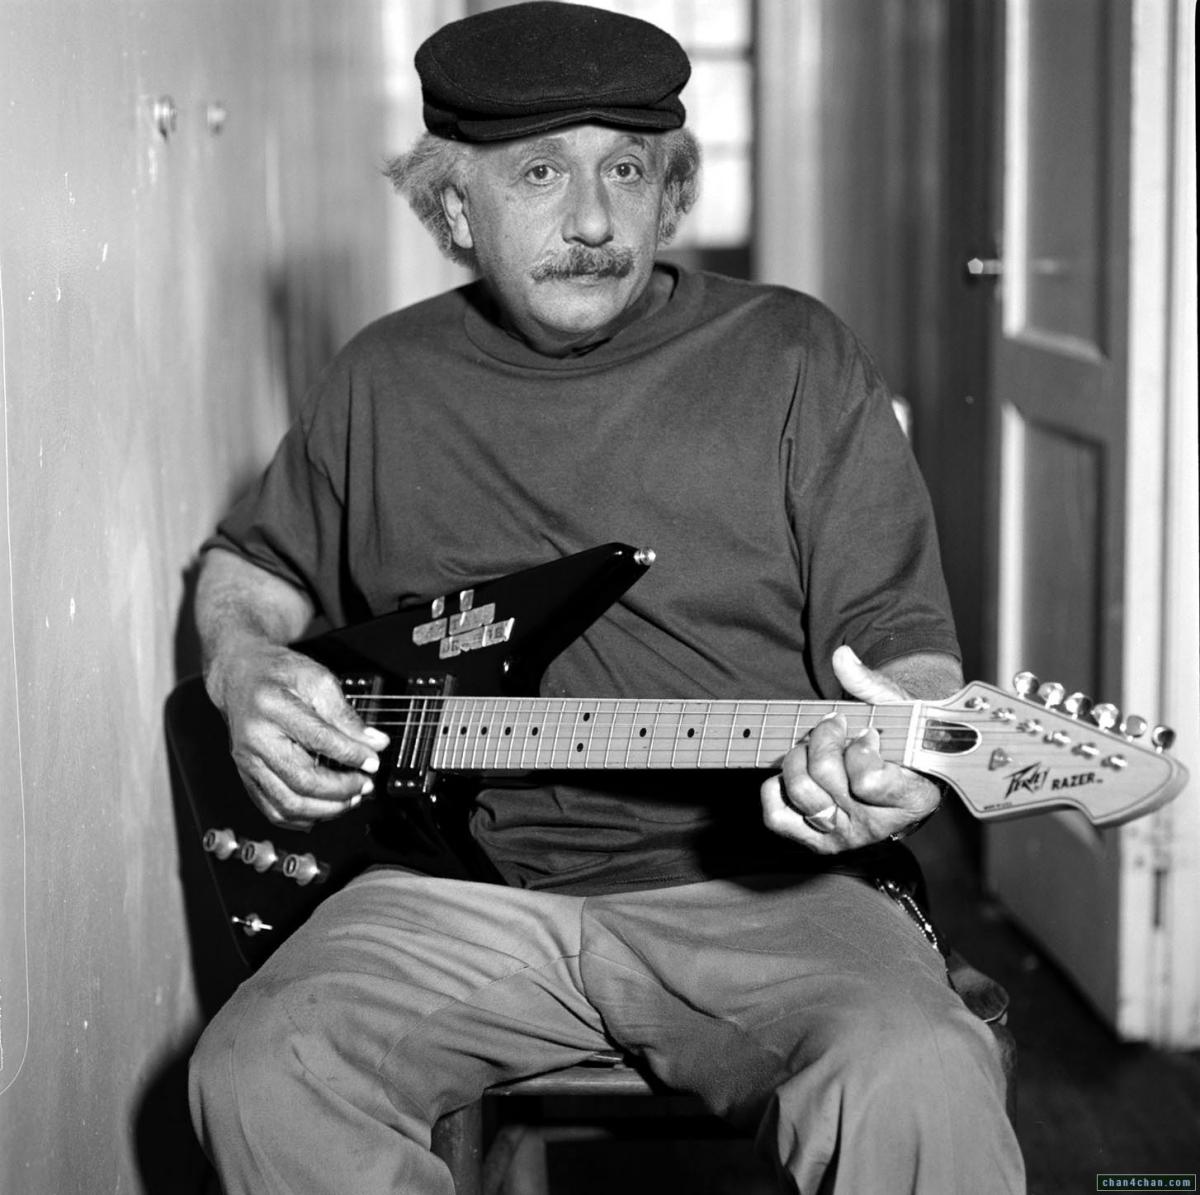 Albert Einstein playing electric guitar